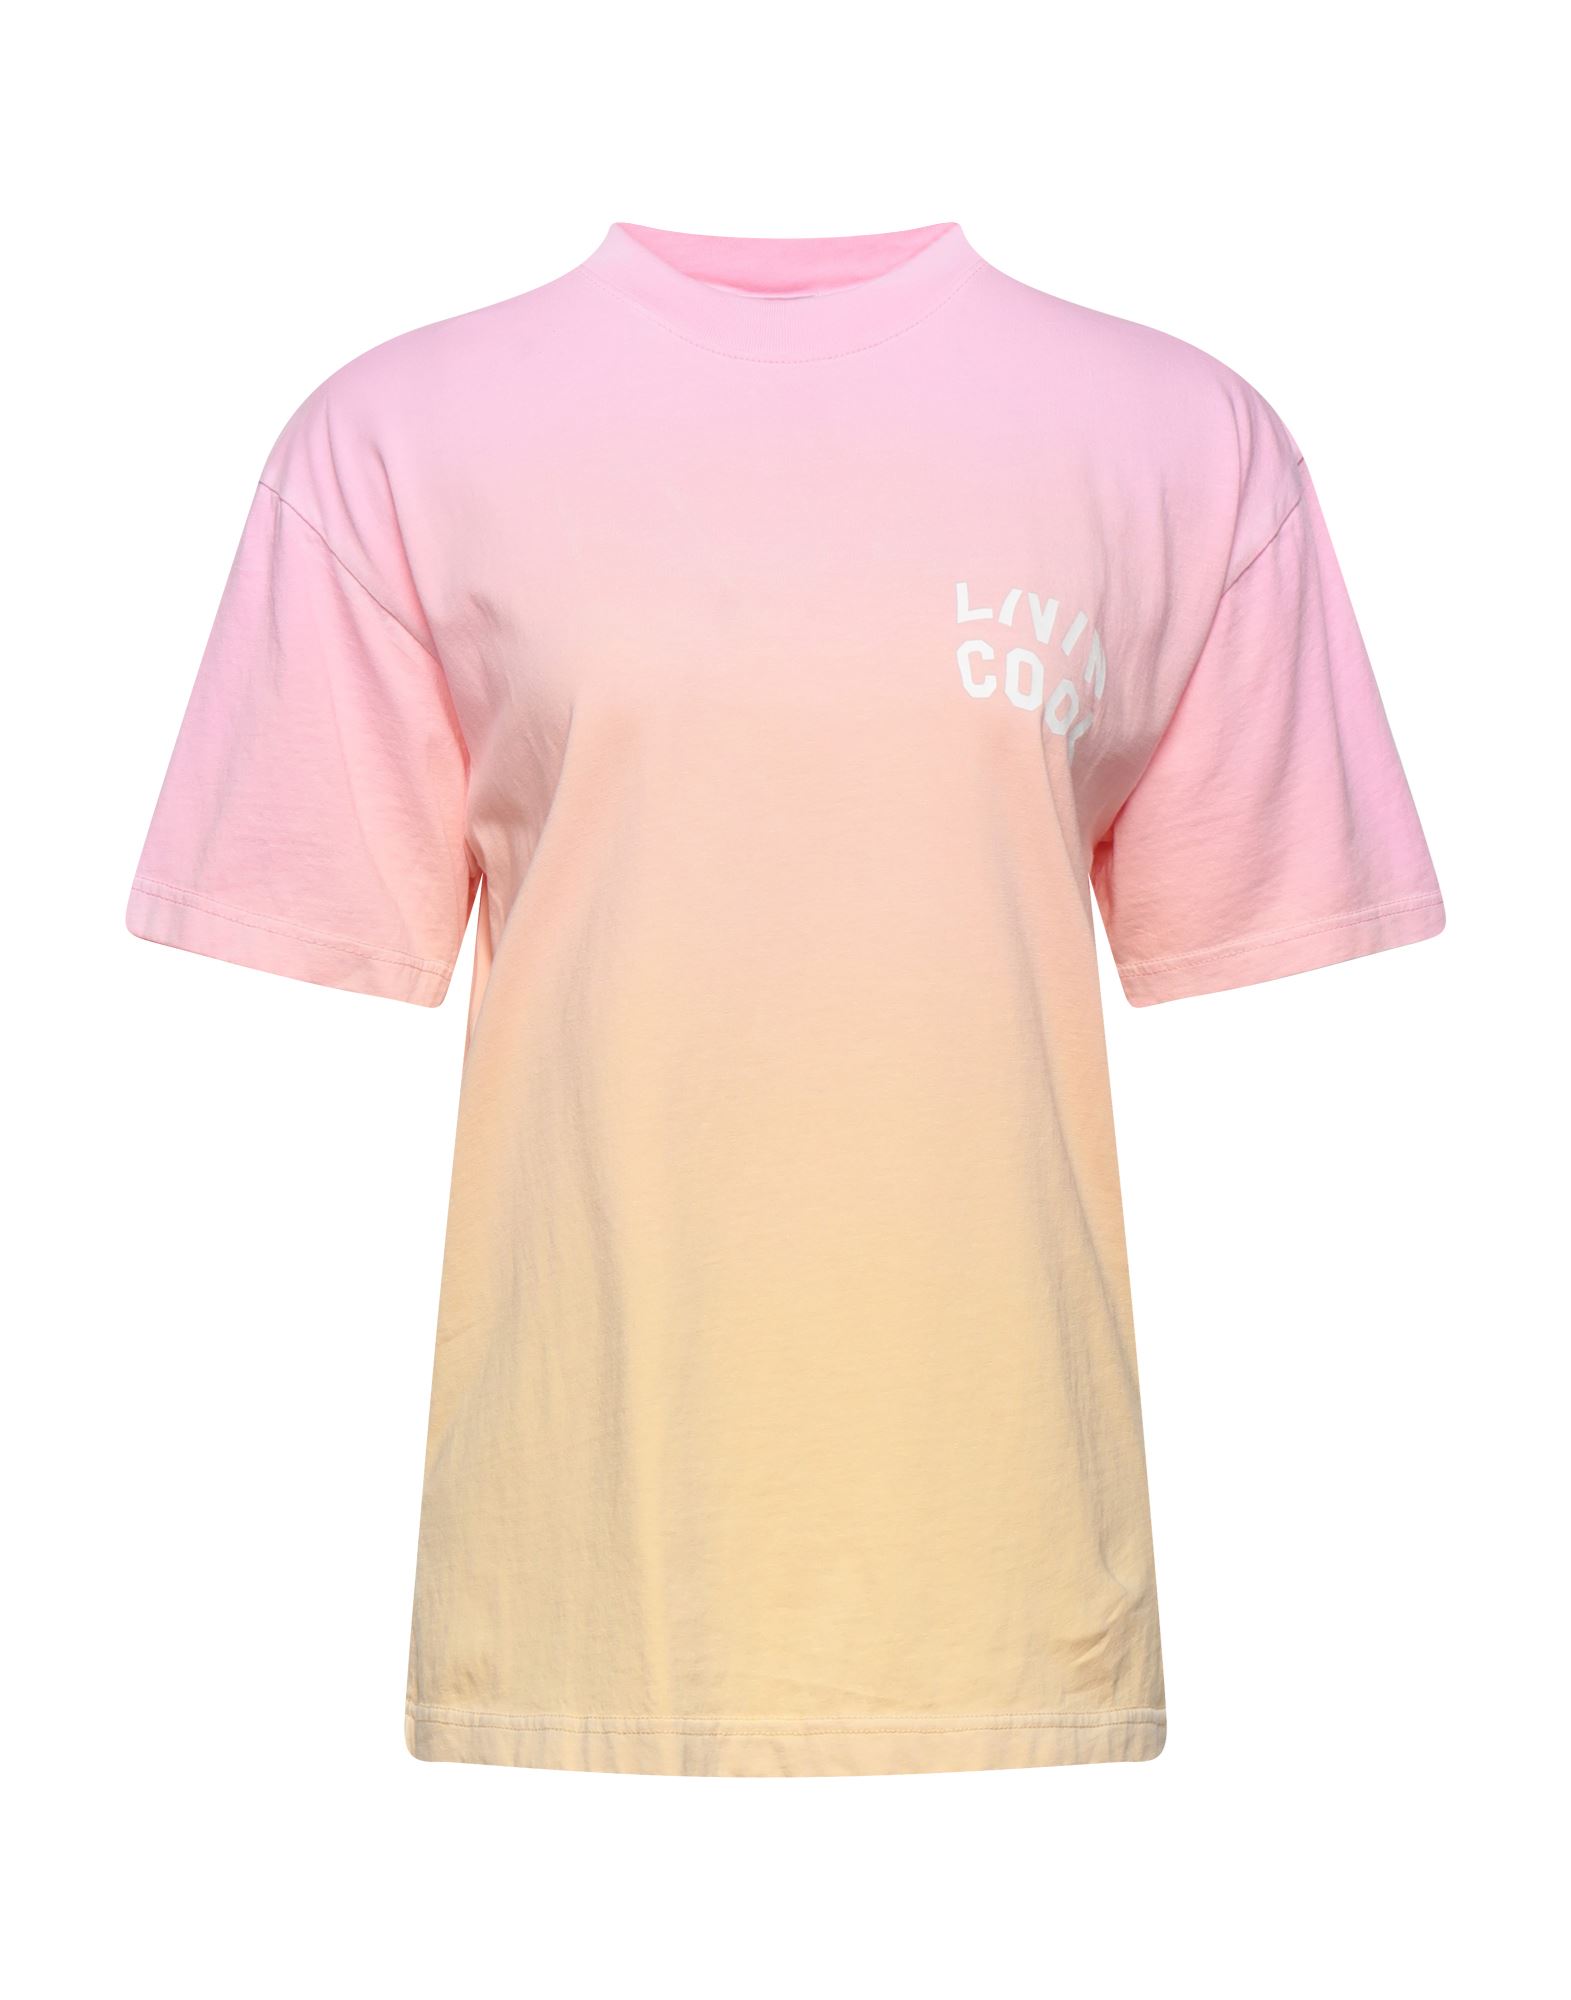 Shop Livincool Woman T-shirt Pink Size S Cotton